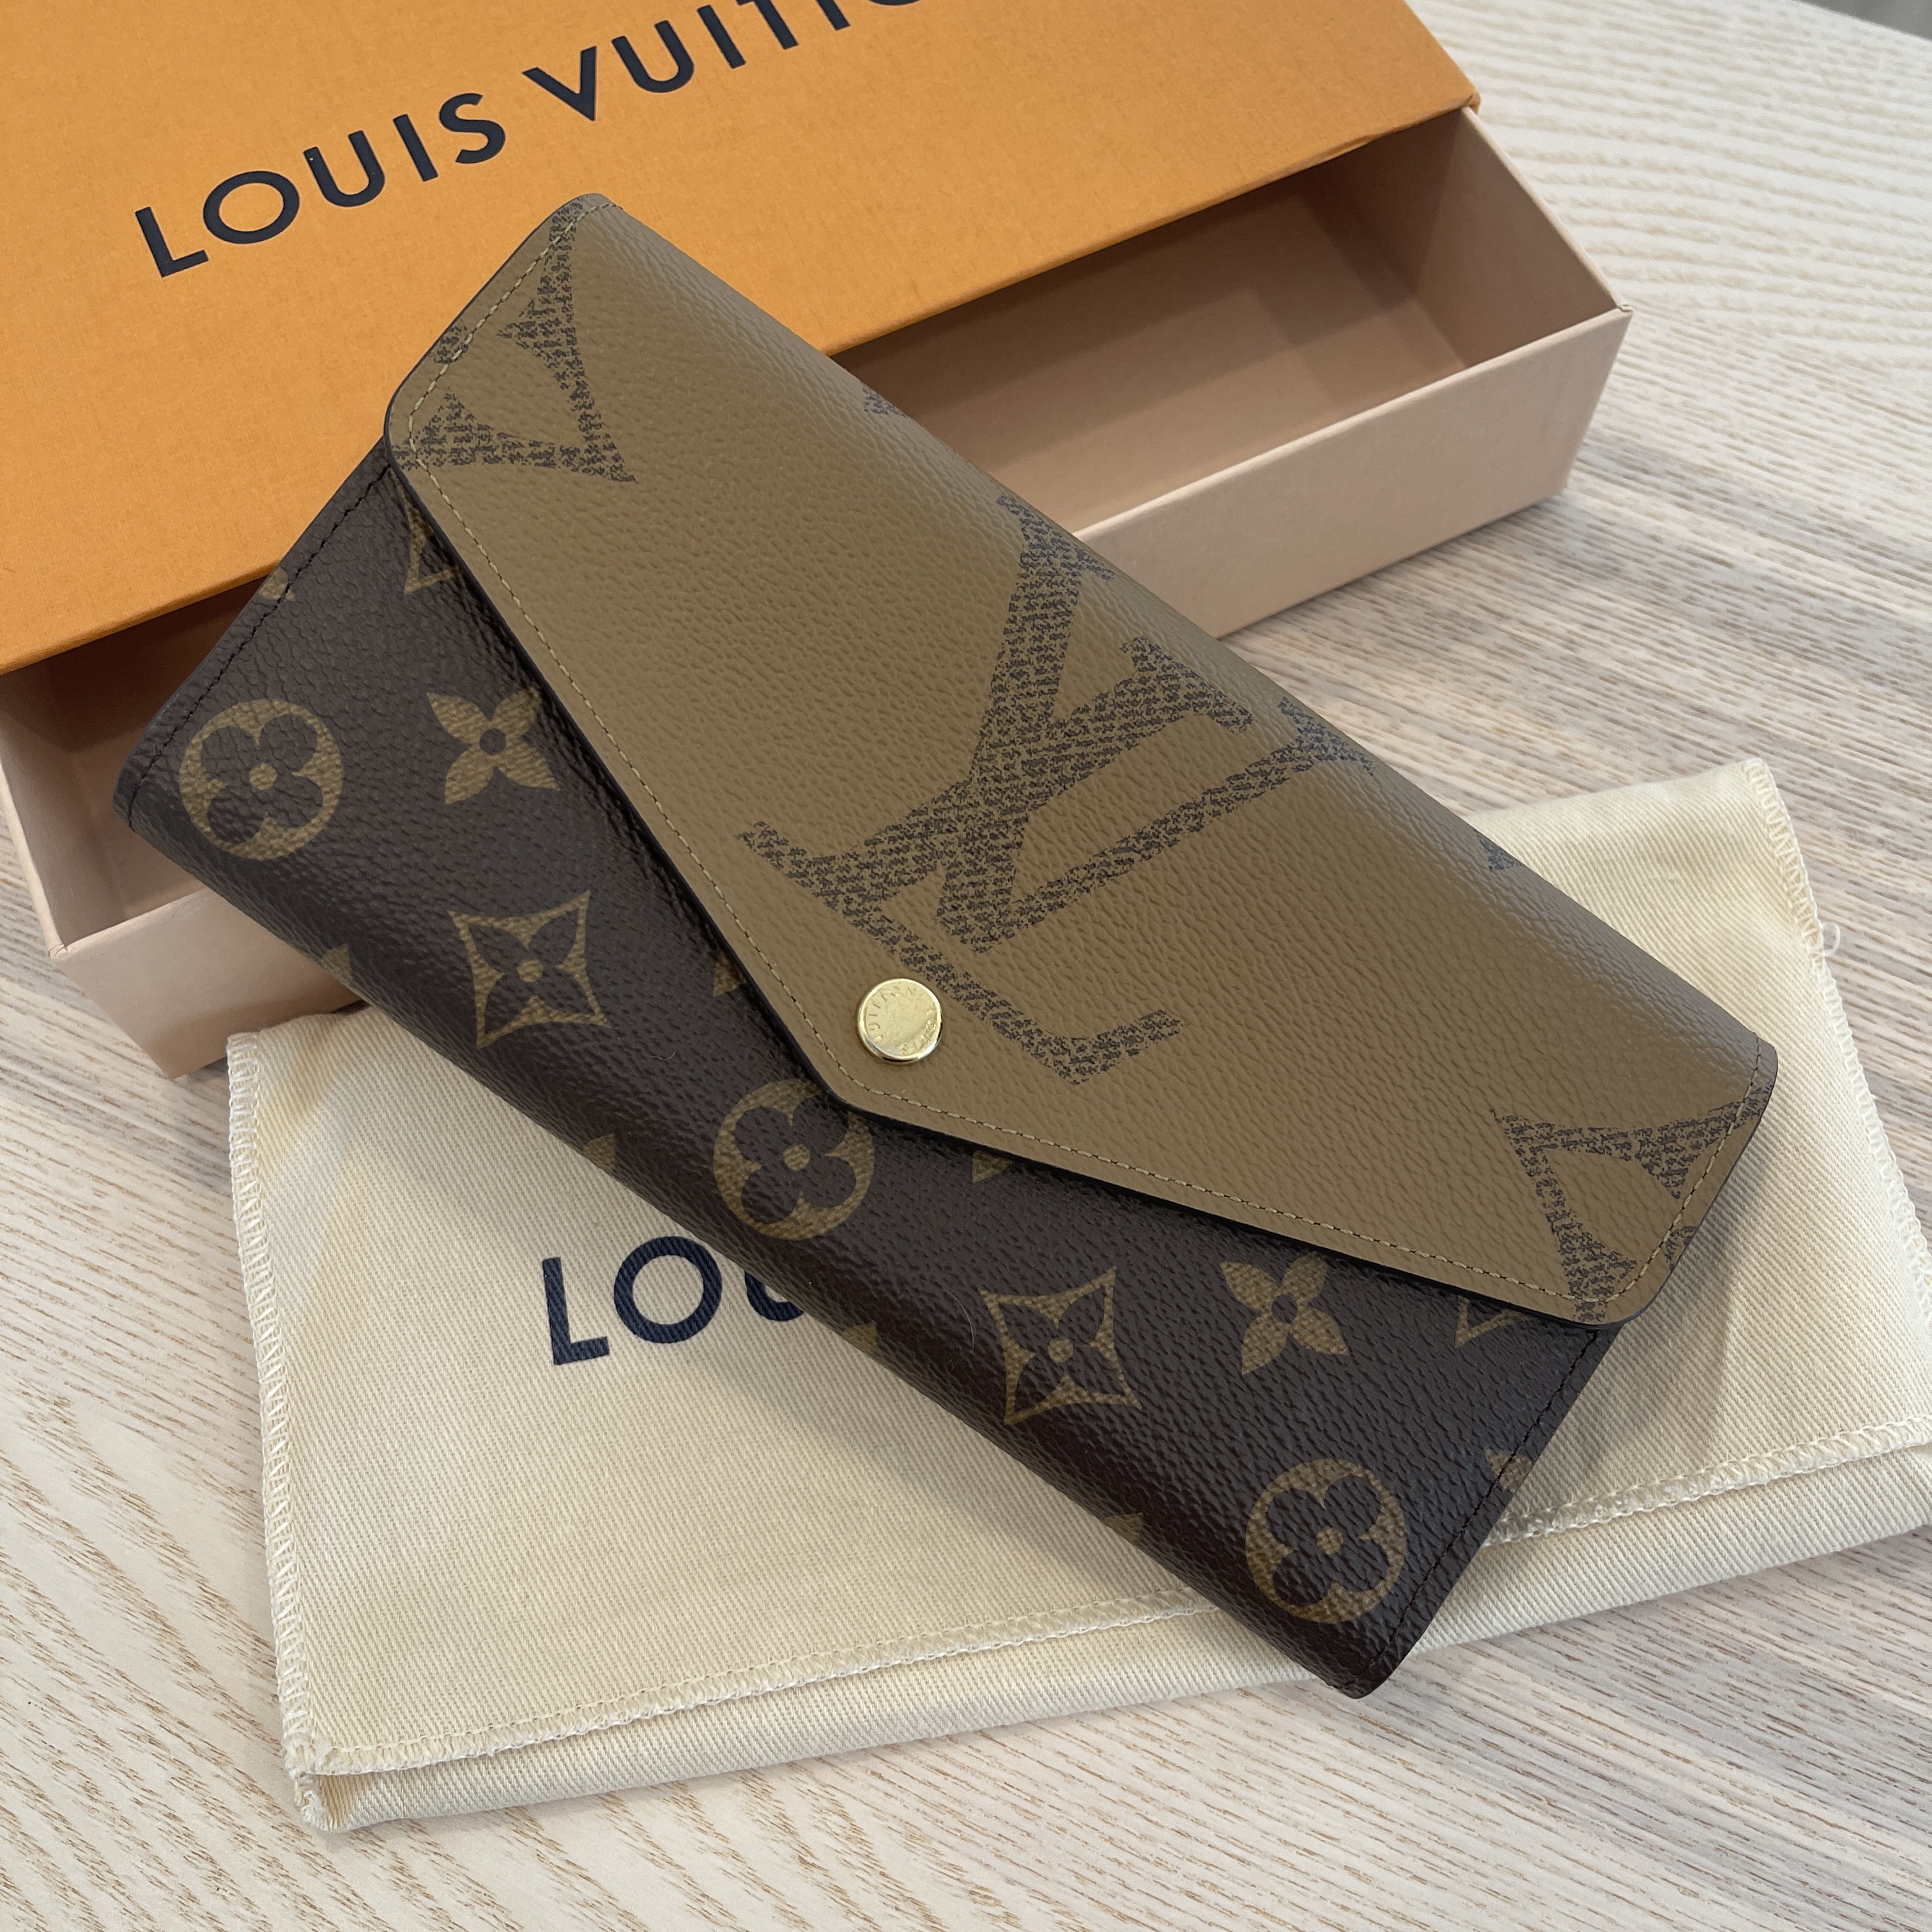 lv wallet packaging